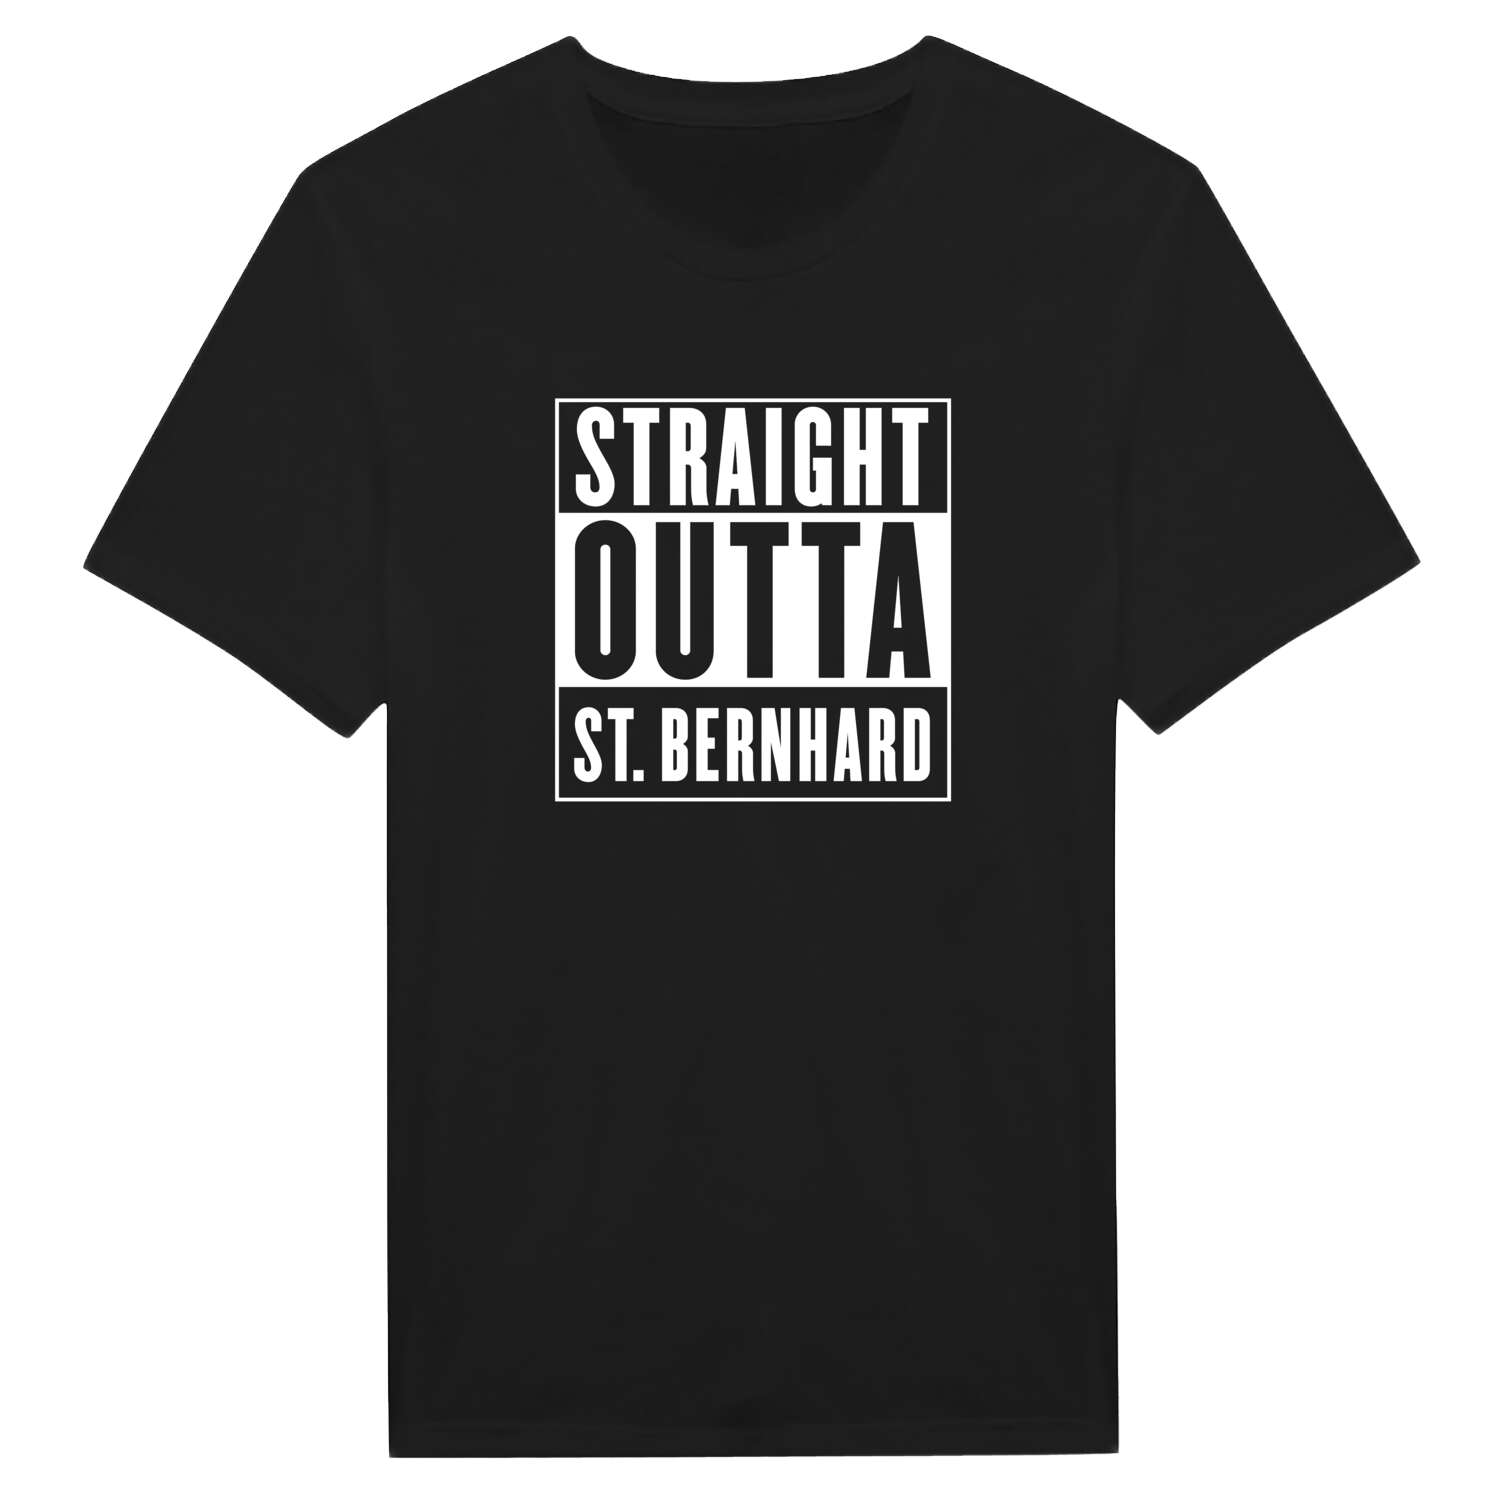 St. Bernhard T-Shirt »Straight Outta«